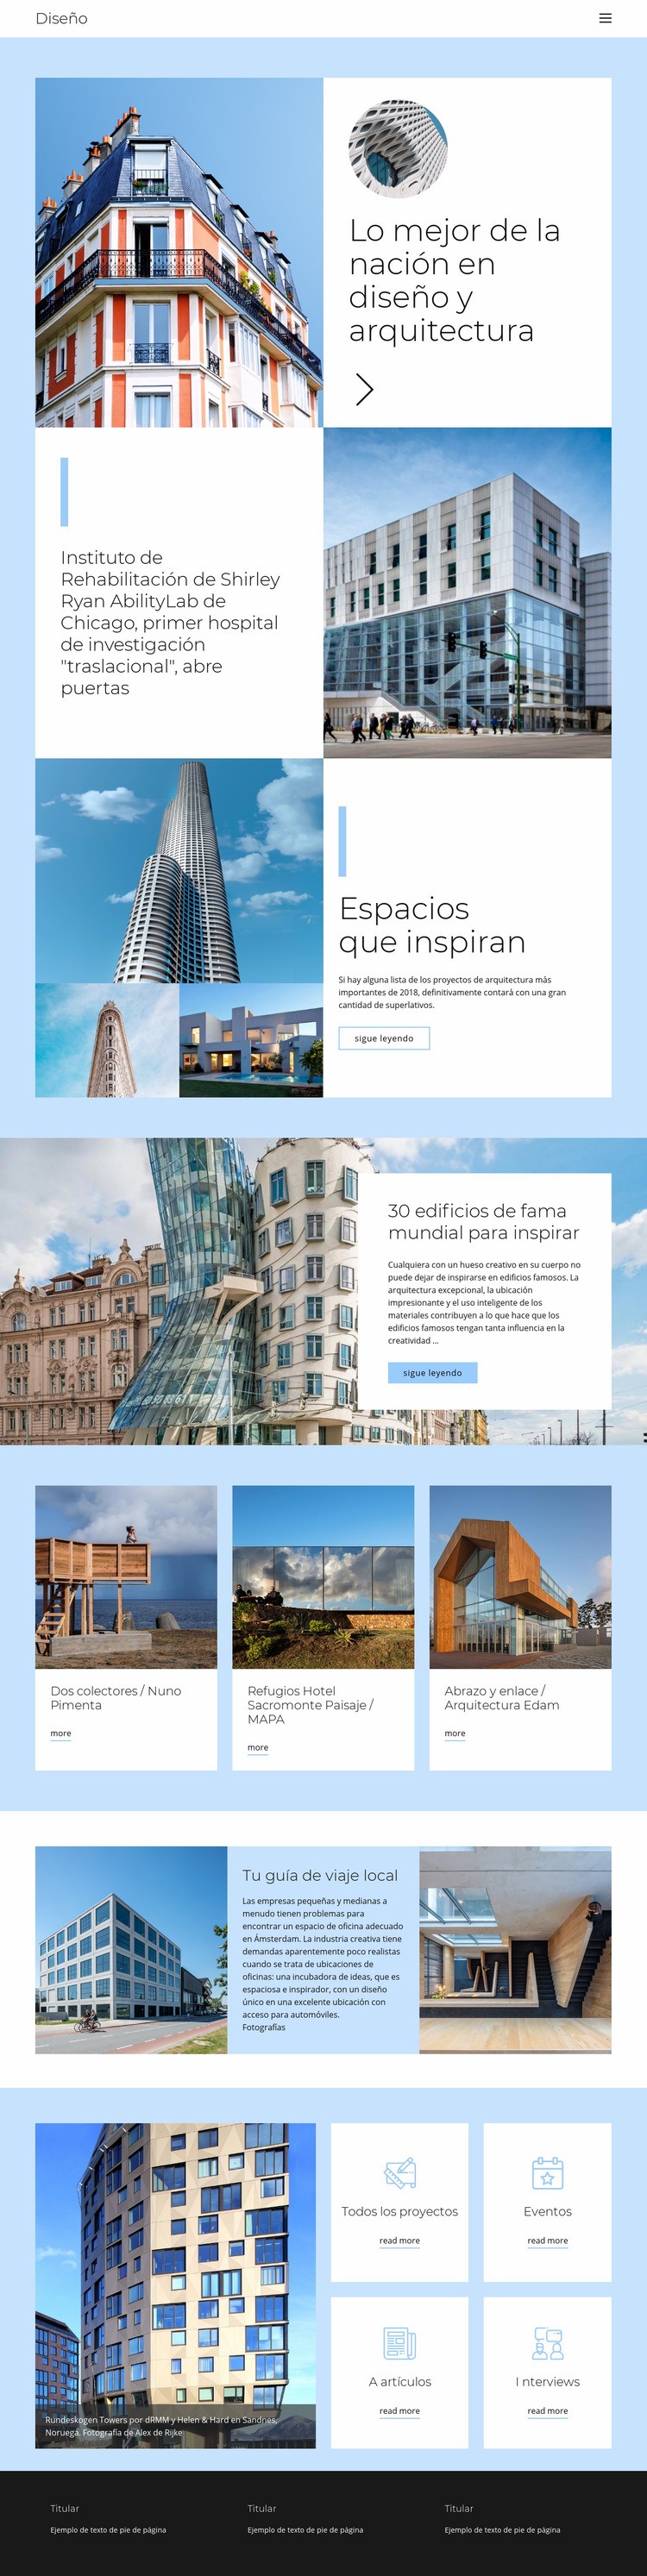 Guía de arquitectura de la ciudad Creador de sitios web HTML